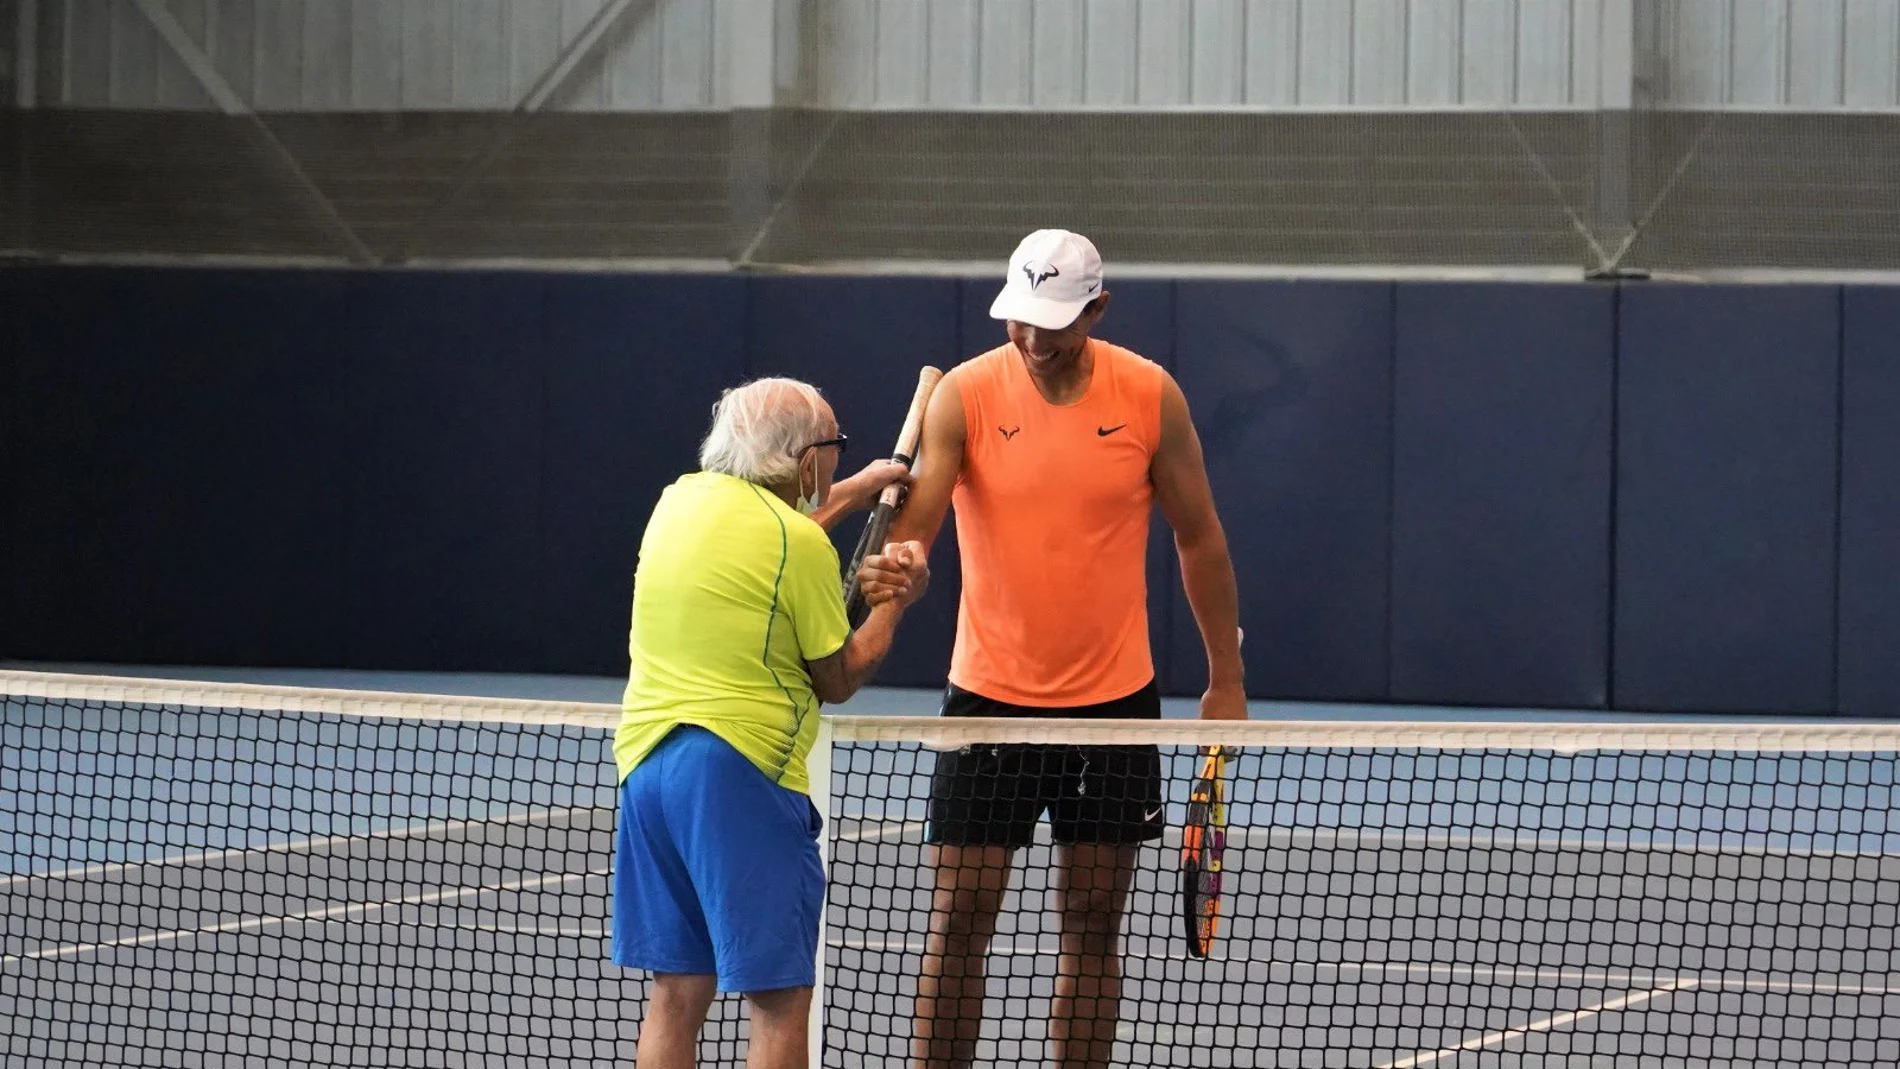 Nadal compartió unos puntos con Leonid Stanislavskyi, de 97 años / Rafa Nadal Academy